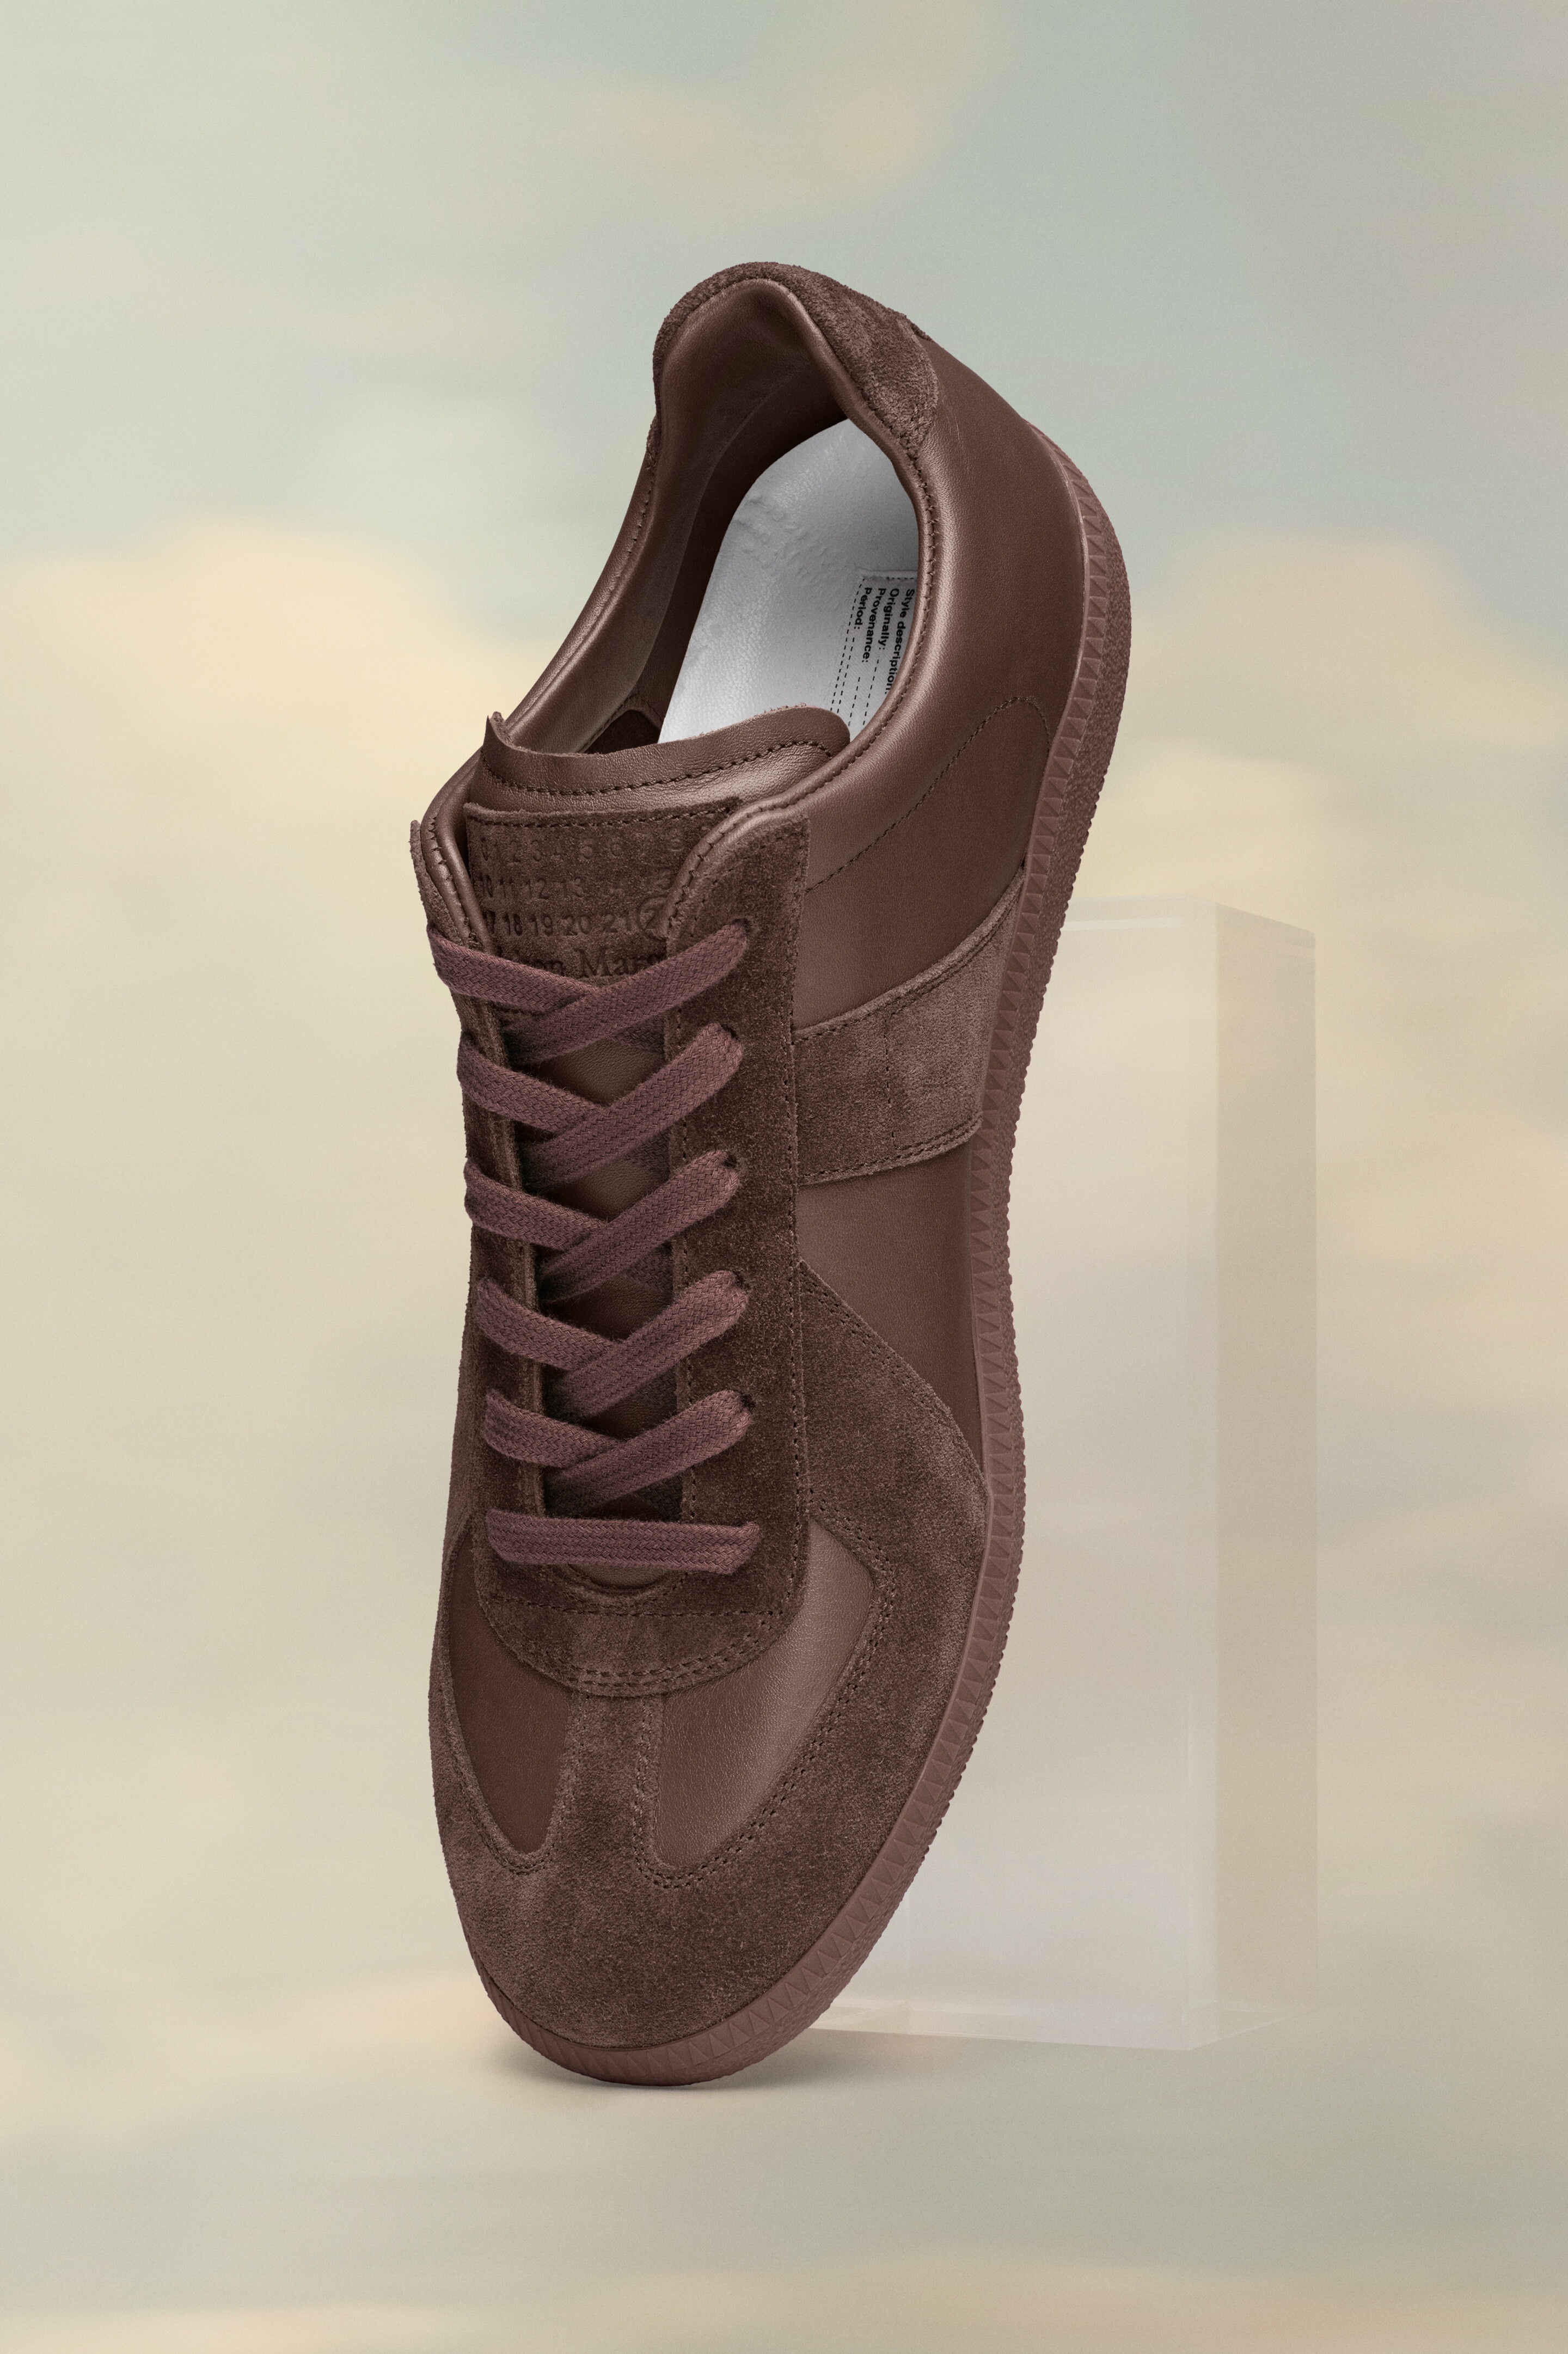 Replica sneakers - 1